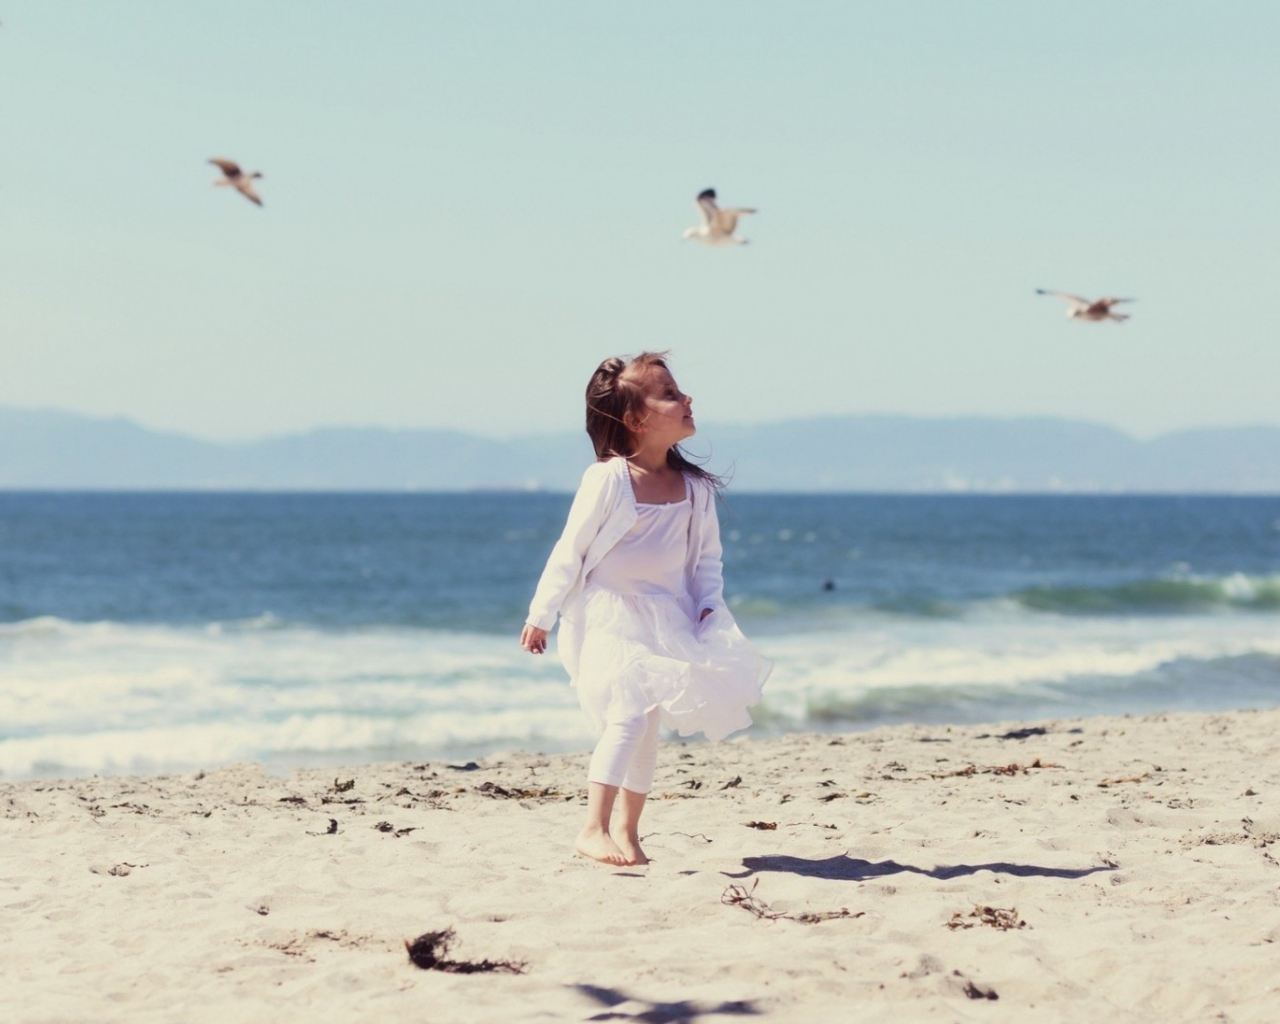 Little Girl And Seagulls On Beach wallpaper 1280x1024